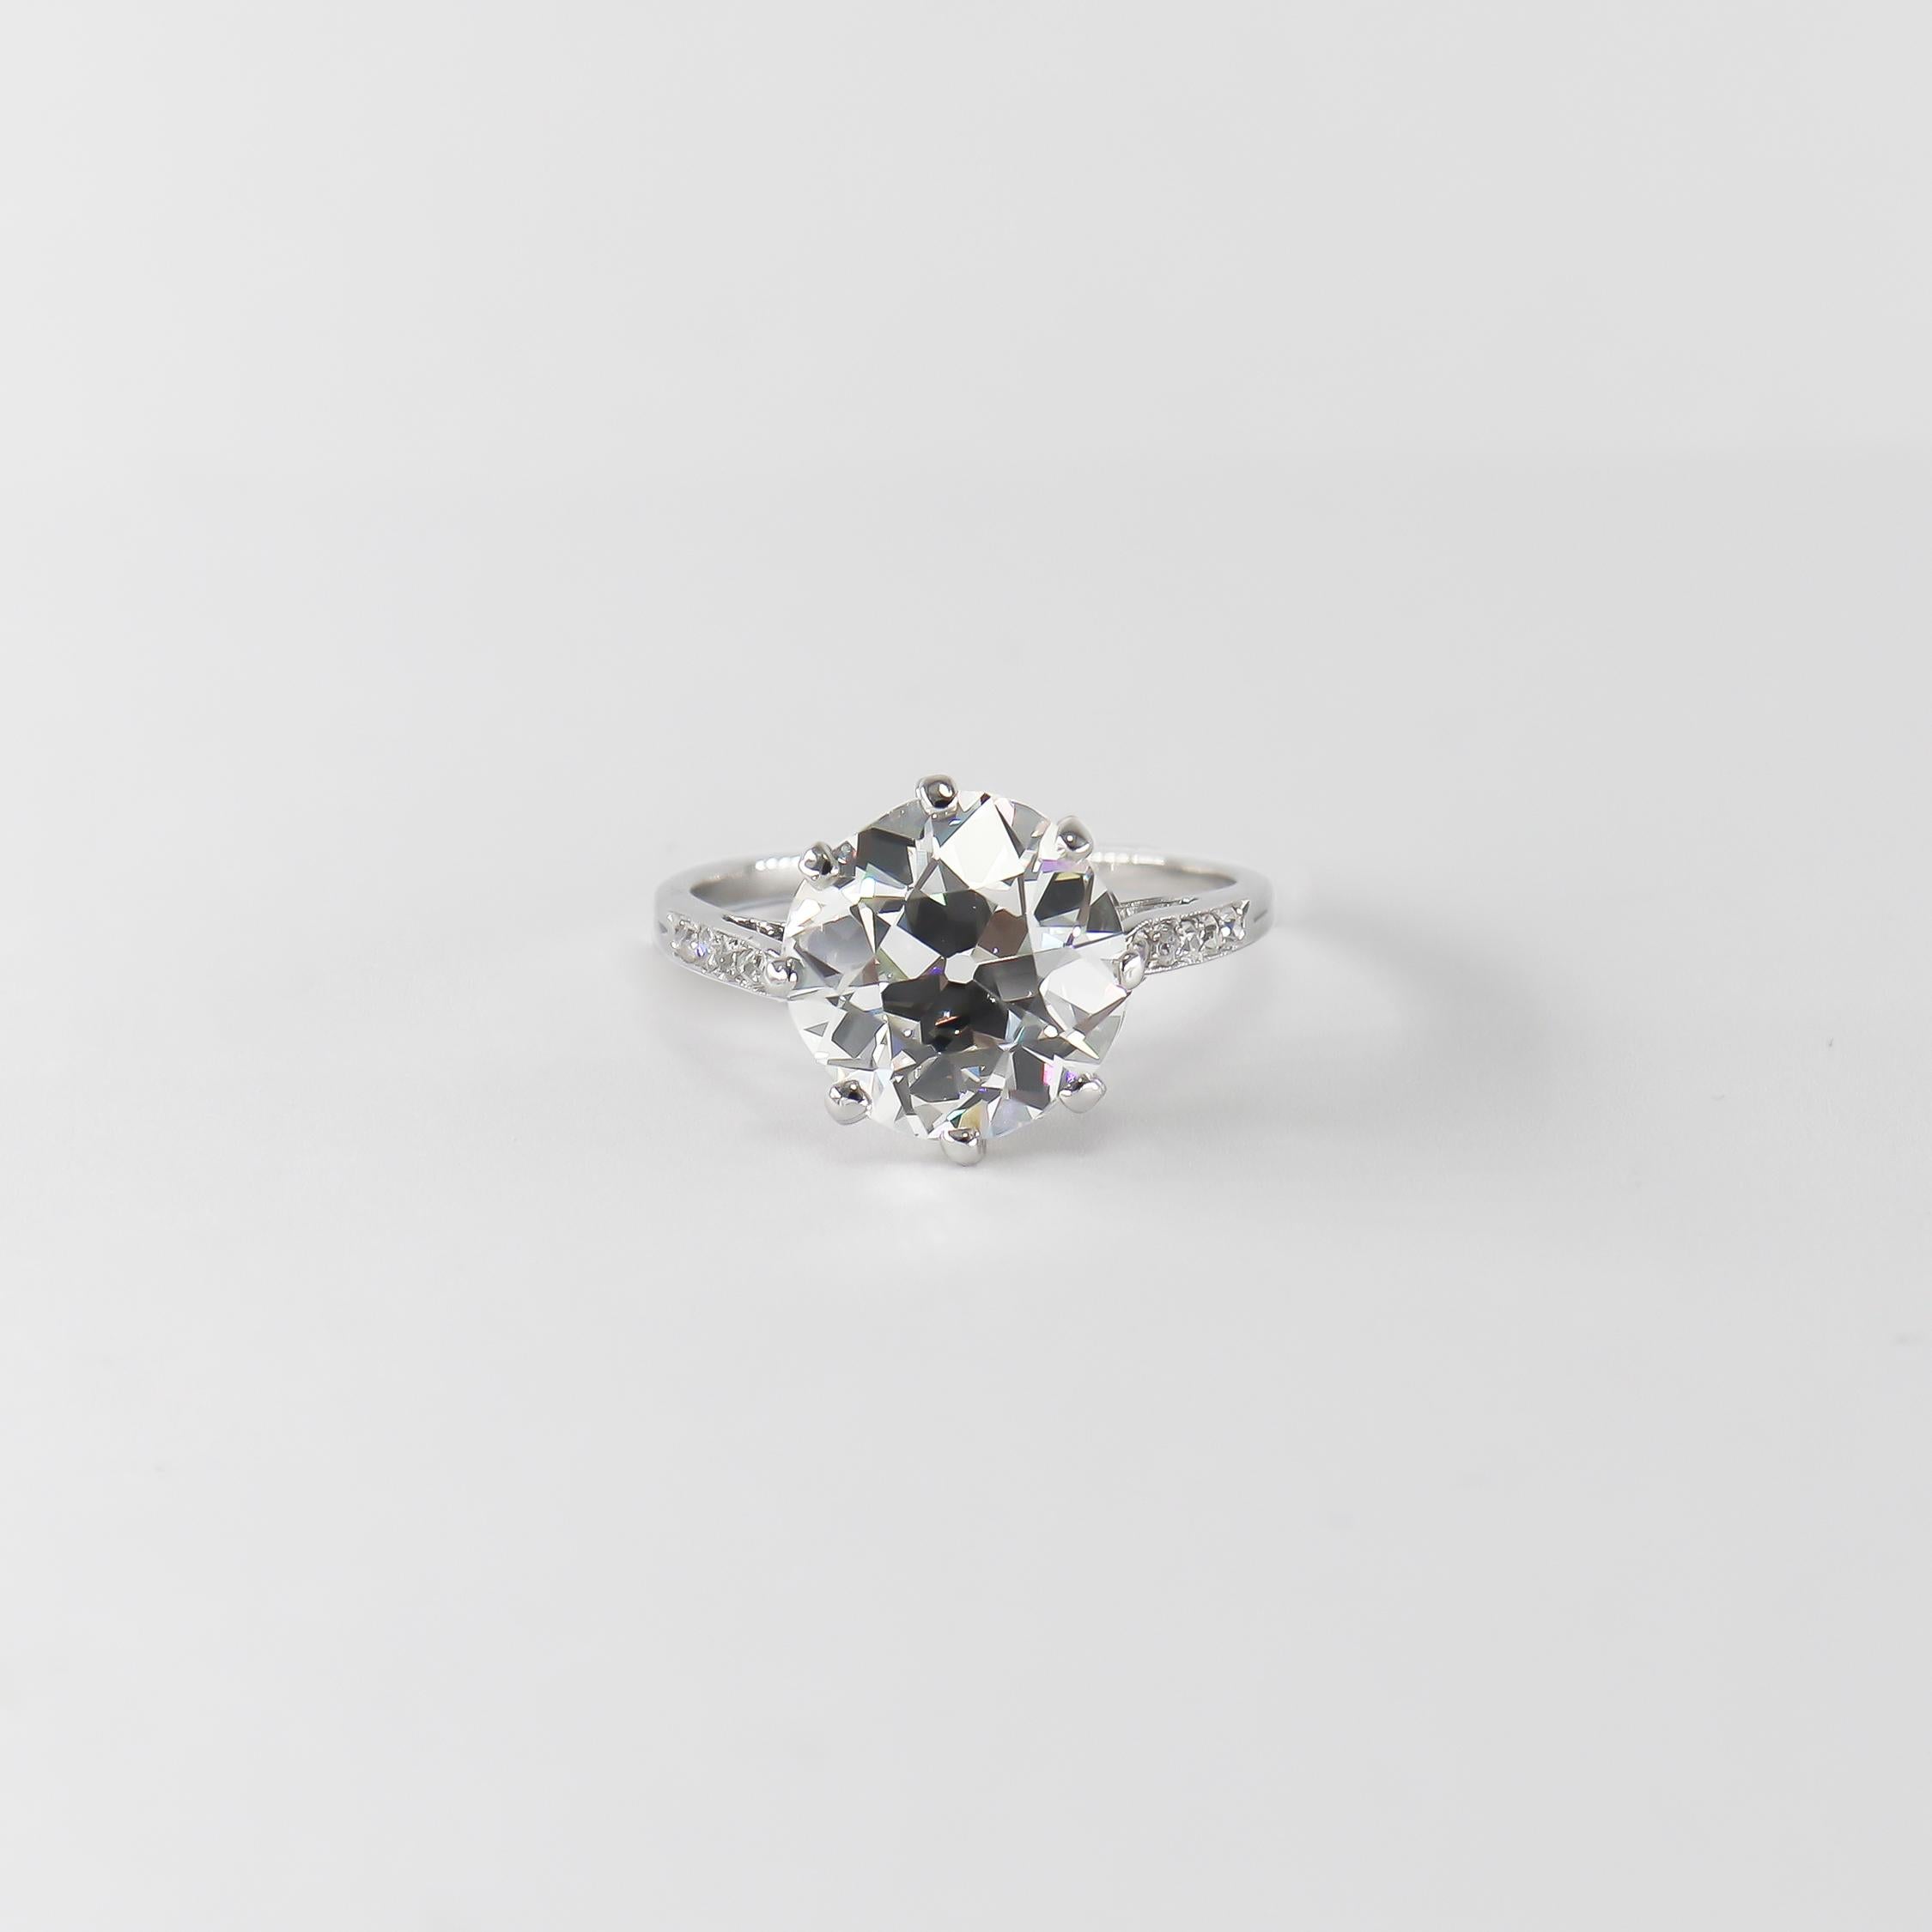 Cette incroyable nouvelle acquisition de la maison J. Birnbach présente un diamant de 4,55 carats de couleur I et de pureté VS1, taillé à la main dans une ancienne mine, selon le rapport GIA n° 6227275455. Sertie dans une monture de bague vintage en